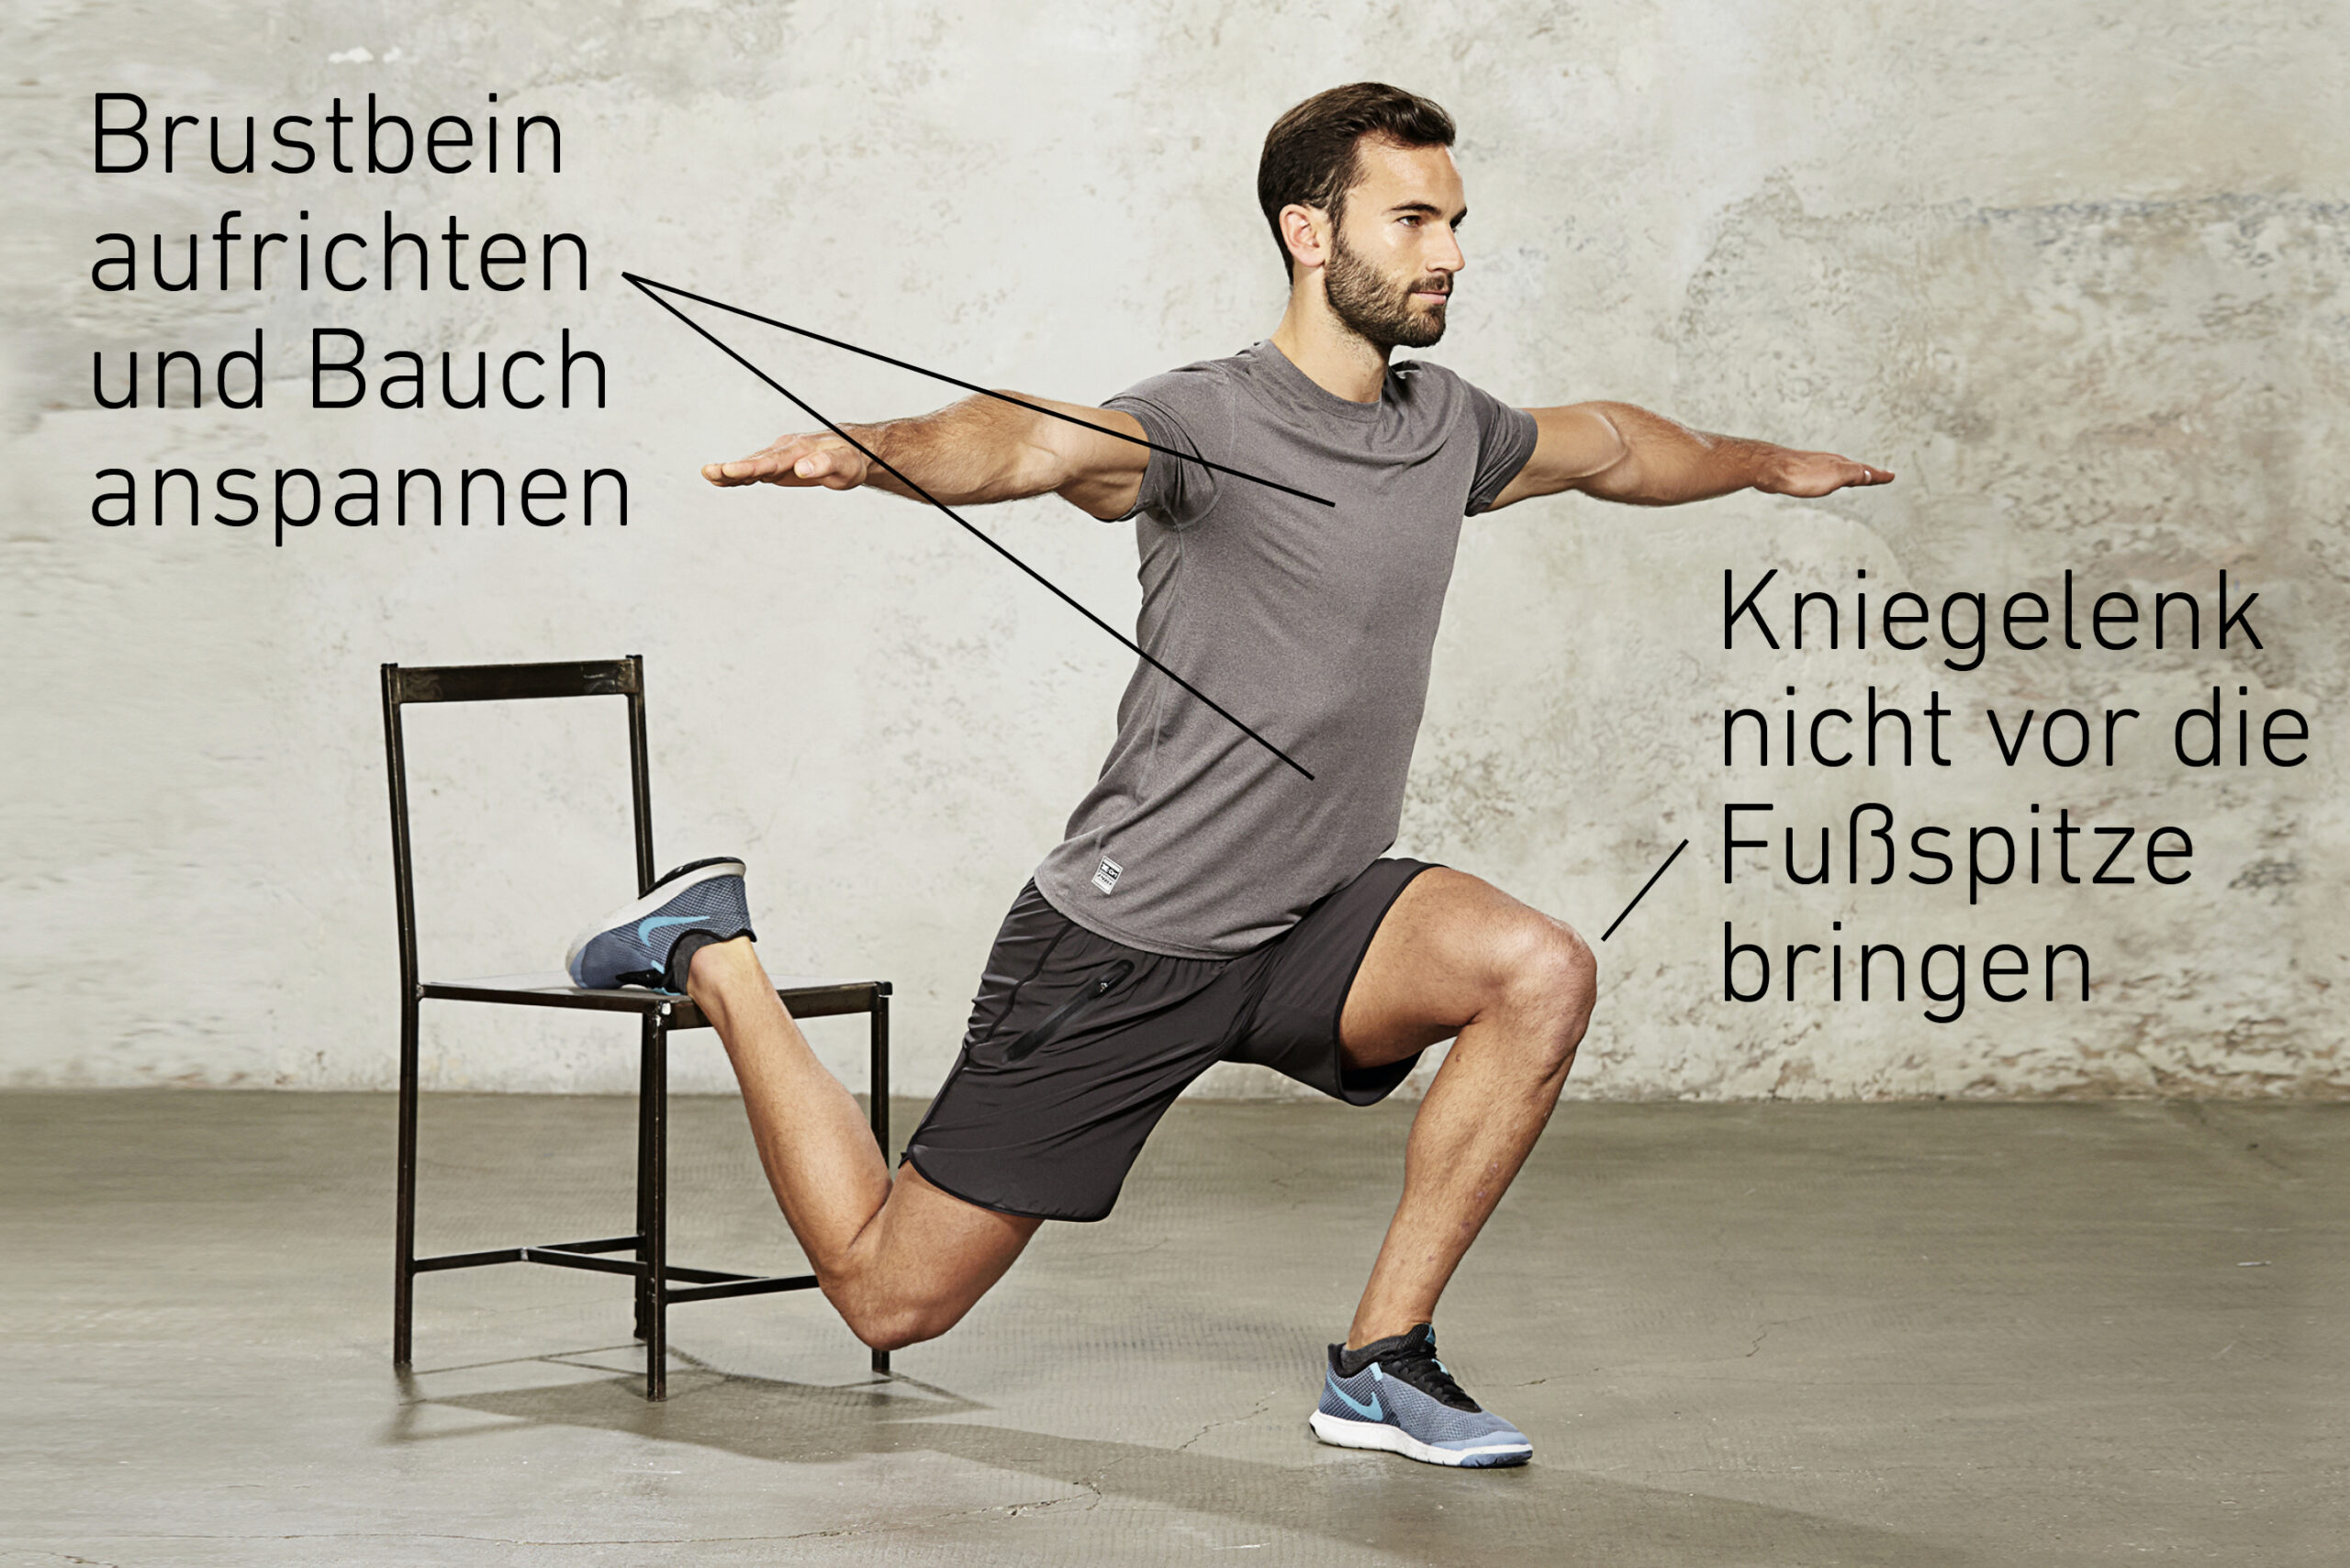 Fitnessübung Einbeinige Kniebeuge Bild mit Beschreibung